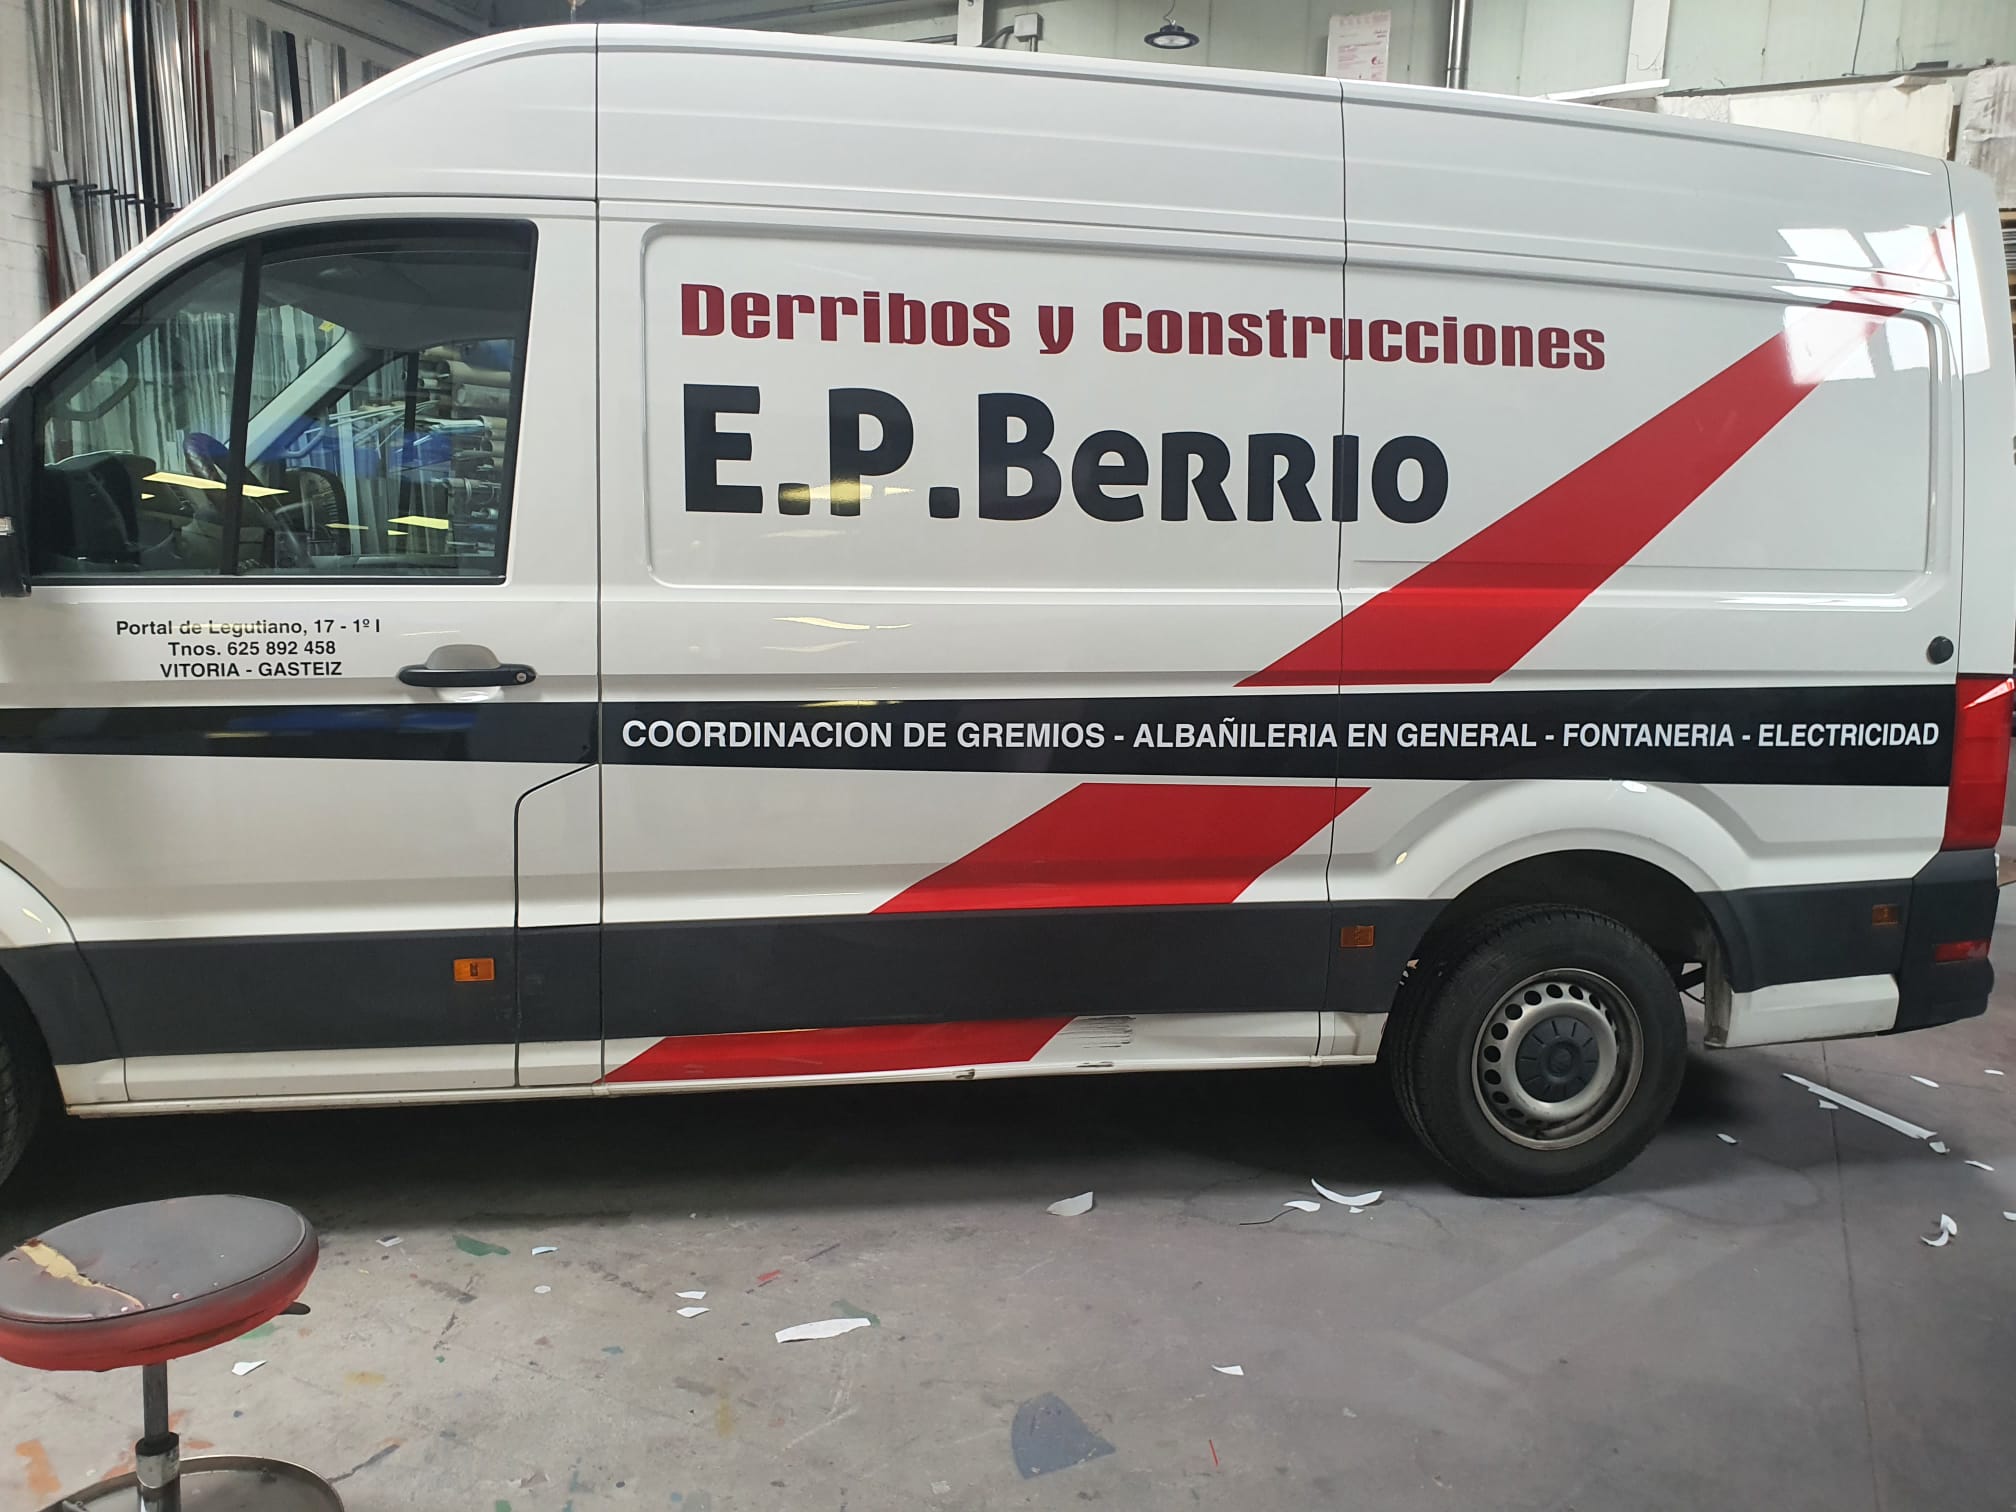 Images Derribos y Construcciones E.P. Berrio